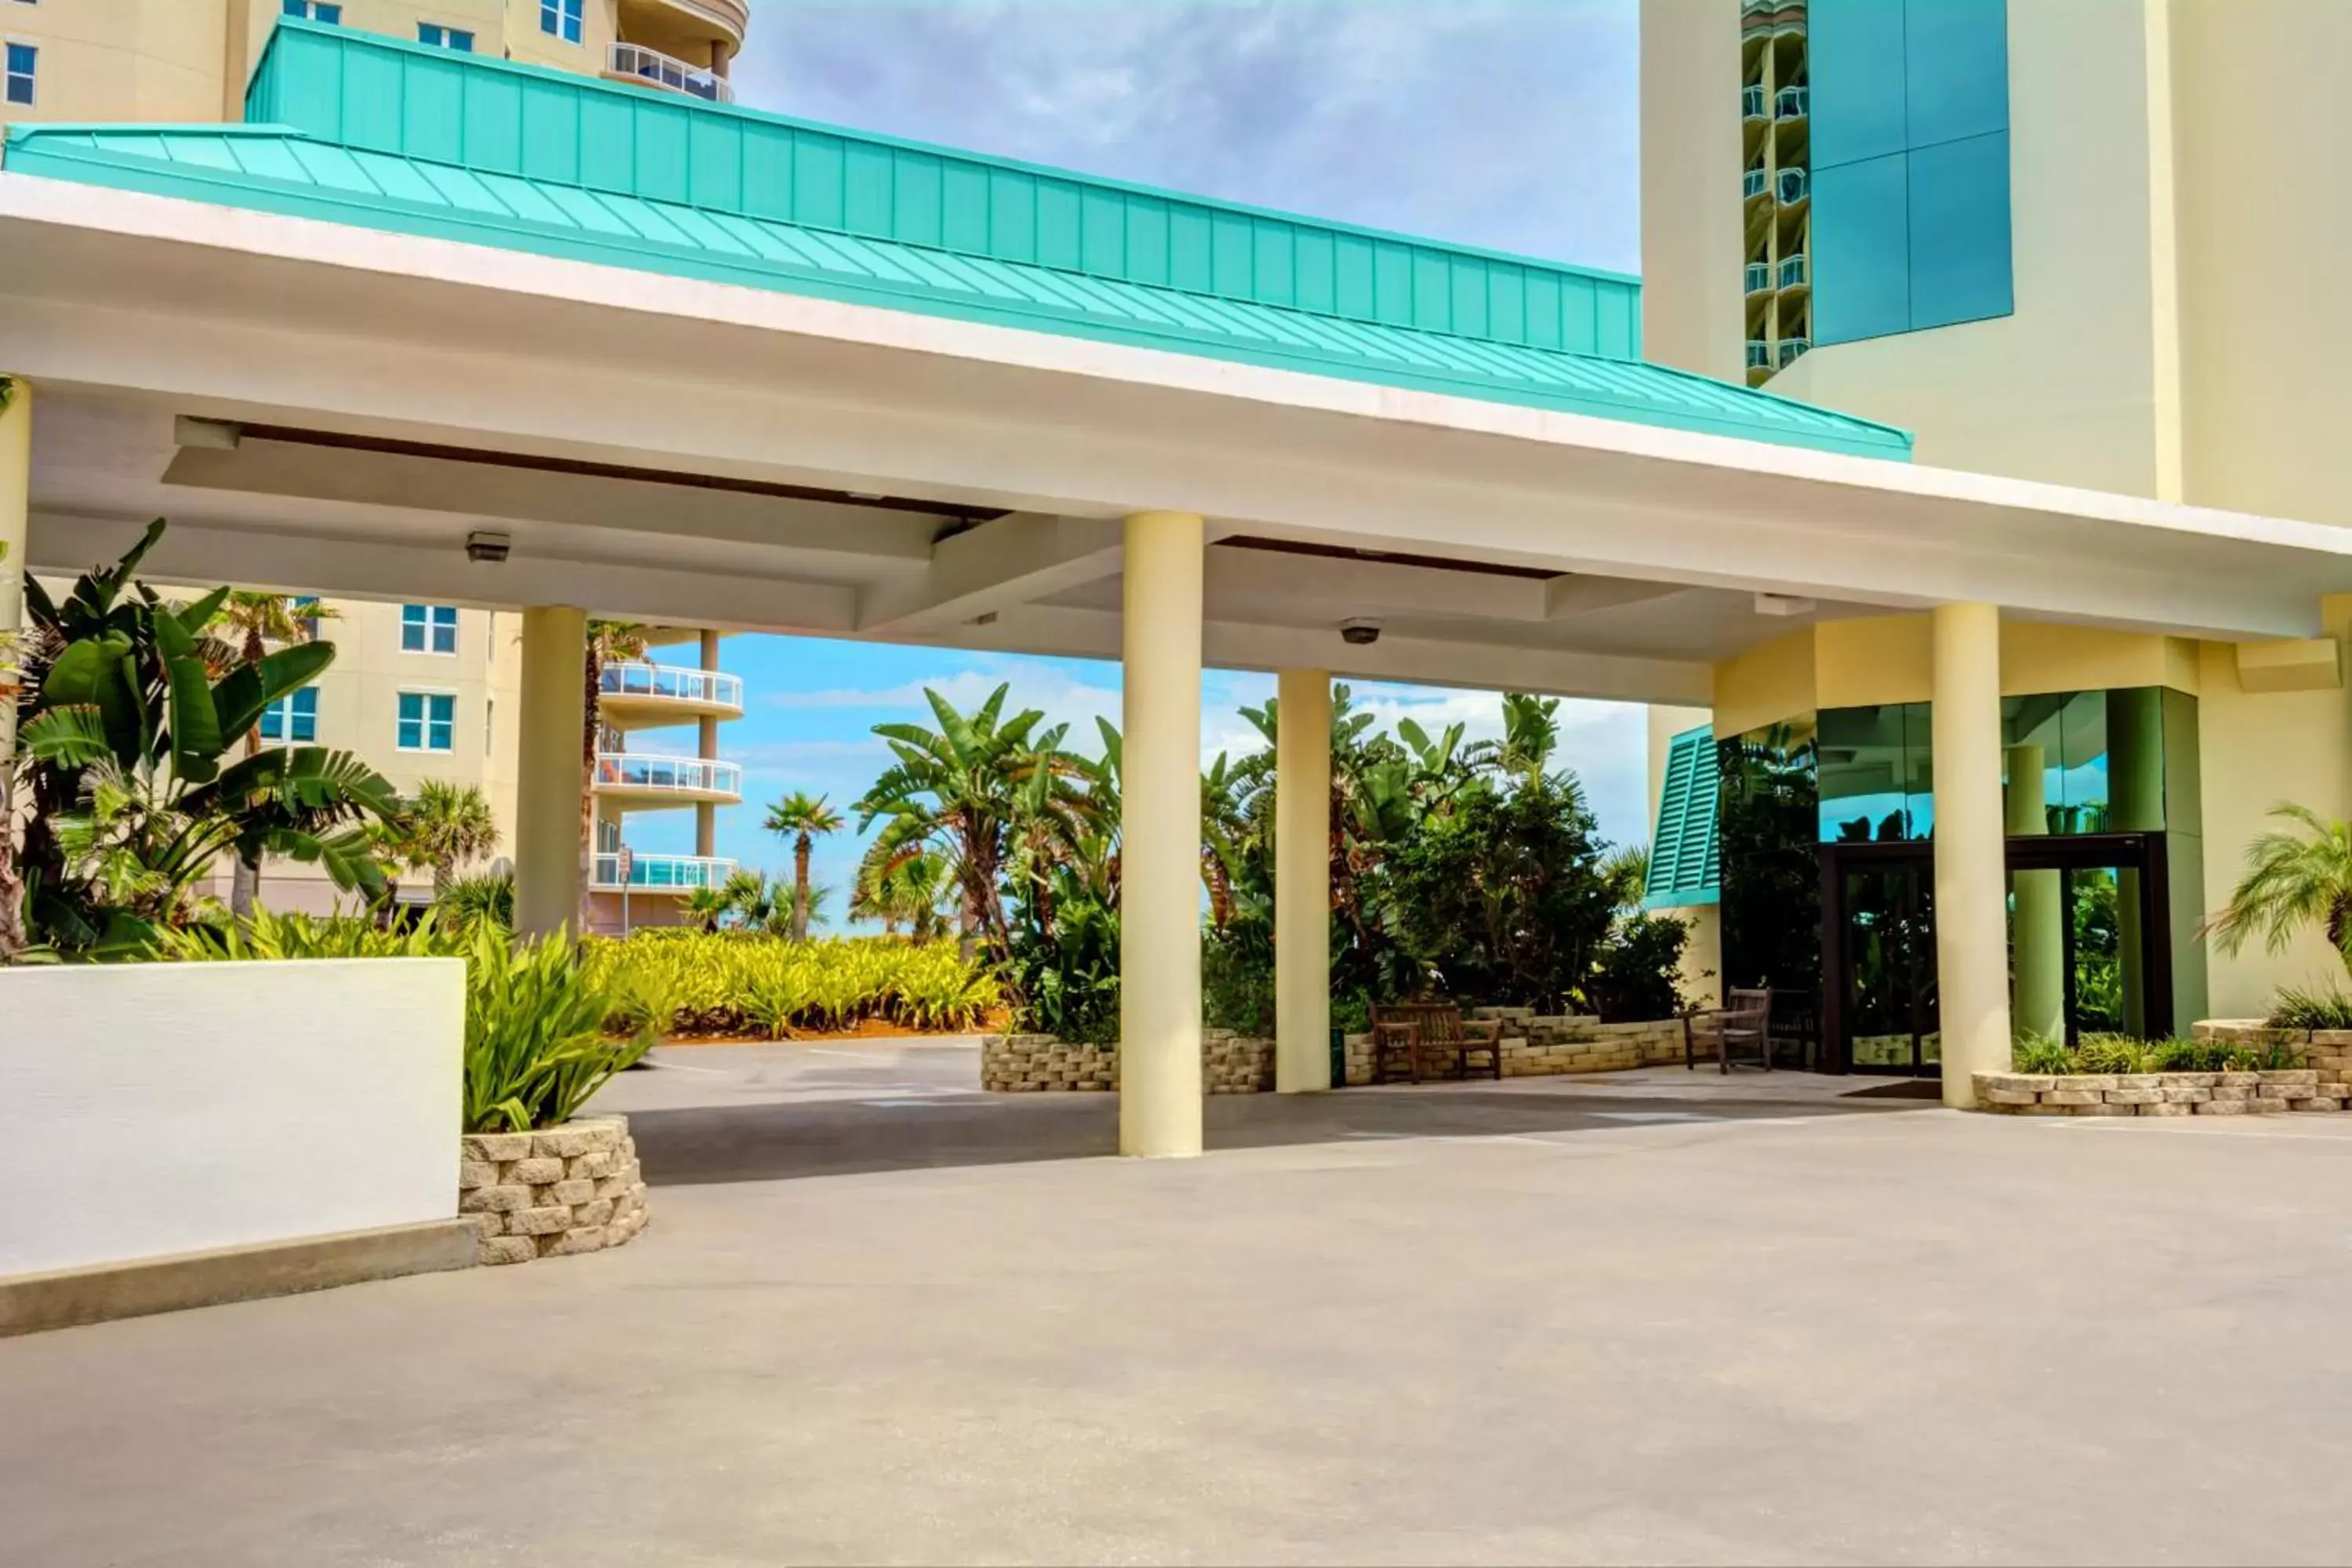 Facade/entrance in Bahama House - Daytona Beach Shores